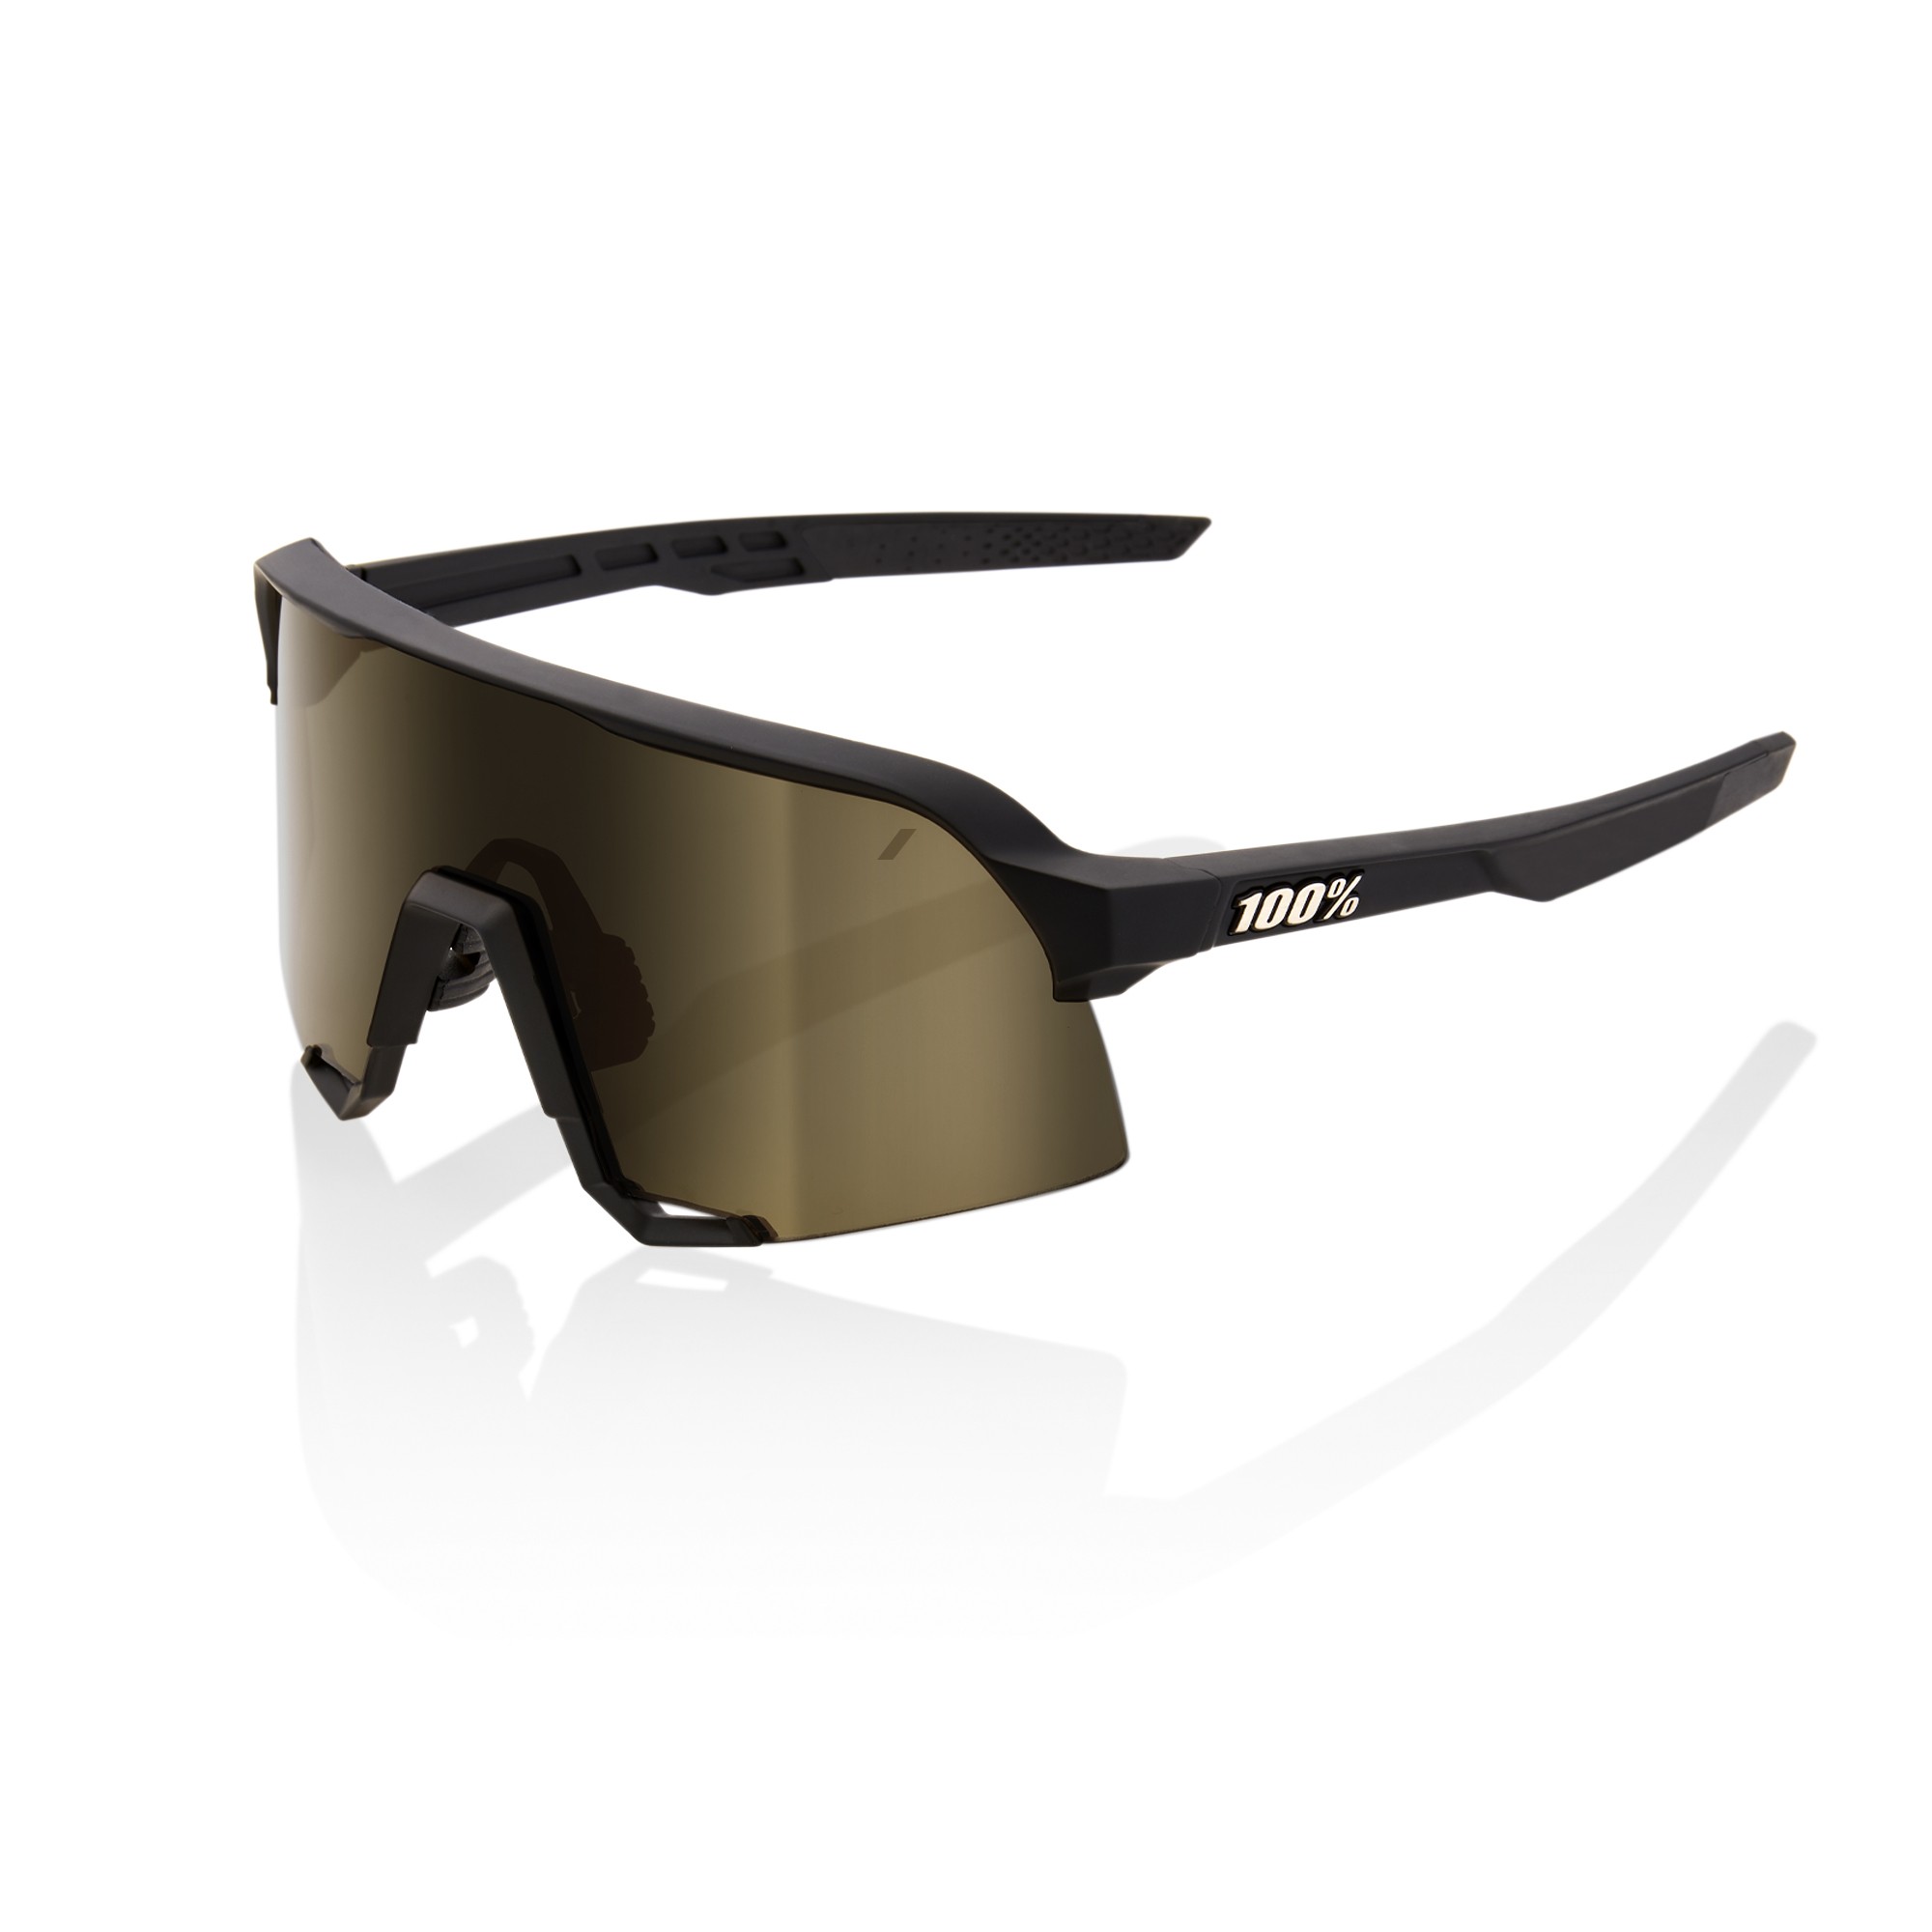 100% S3 fietsbril soft tact zwart - soft gold lens